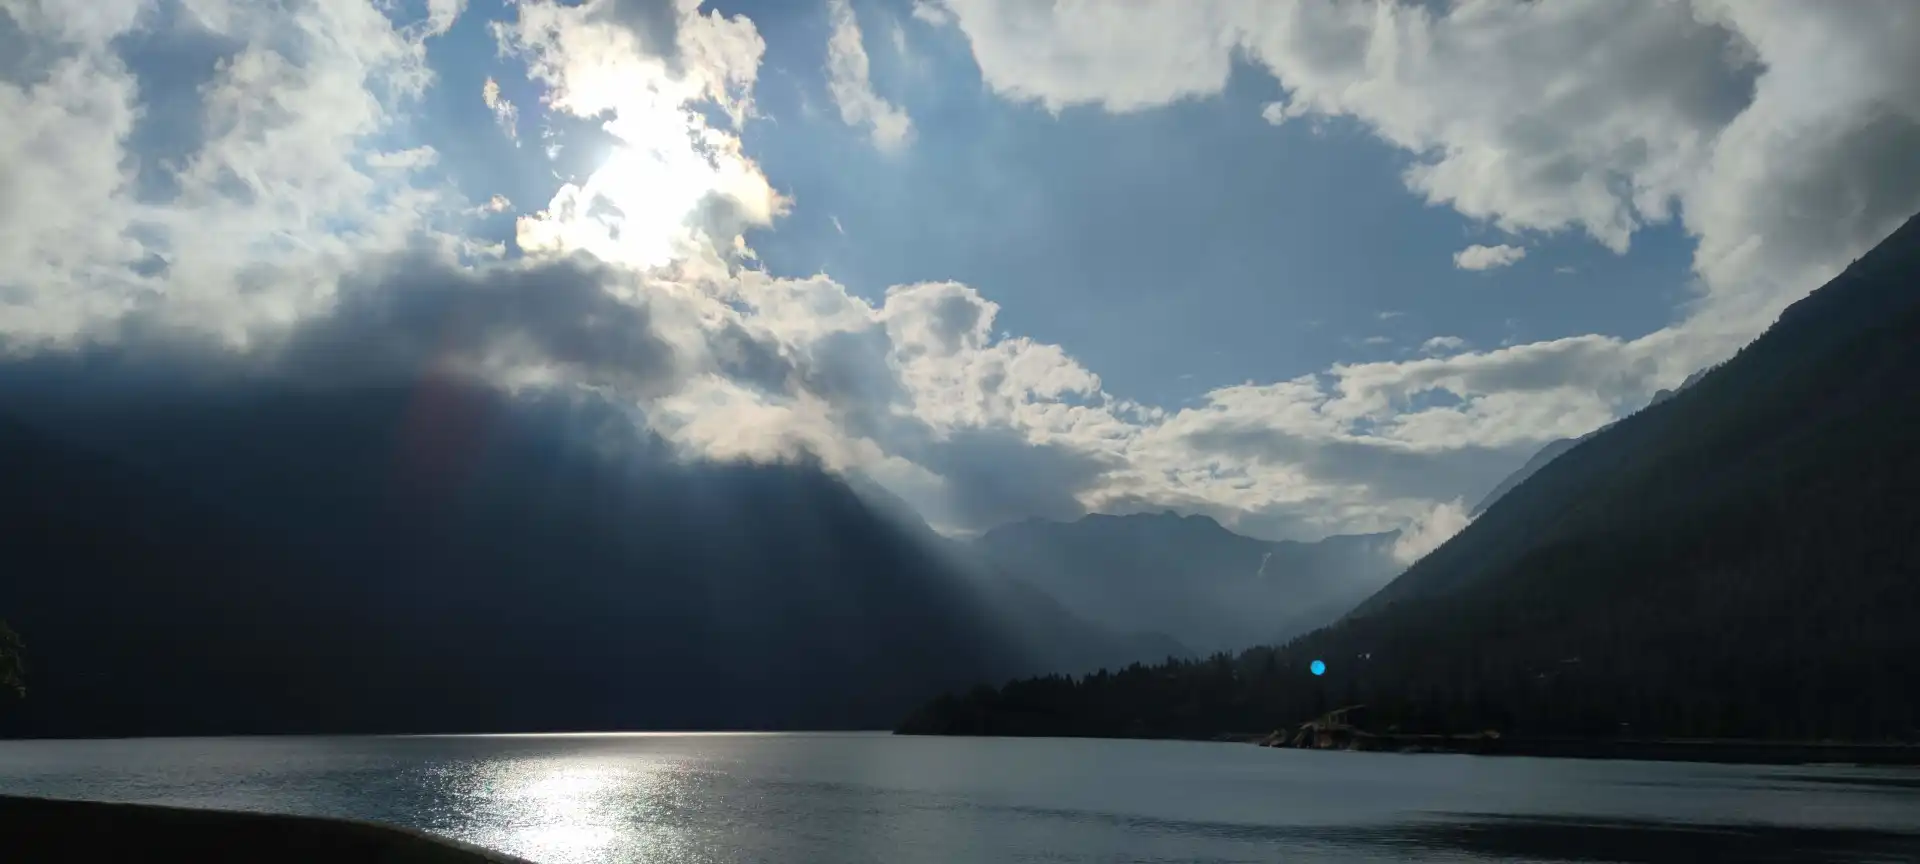 Quattro passi in montagna - Lago di Ceresole Reale, Gran Paradiso - Il racconto